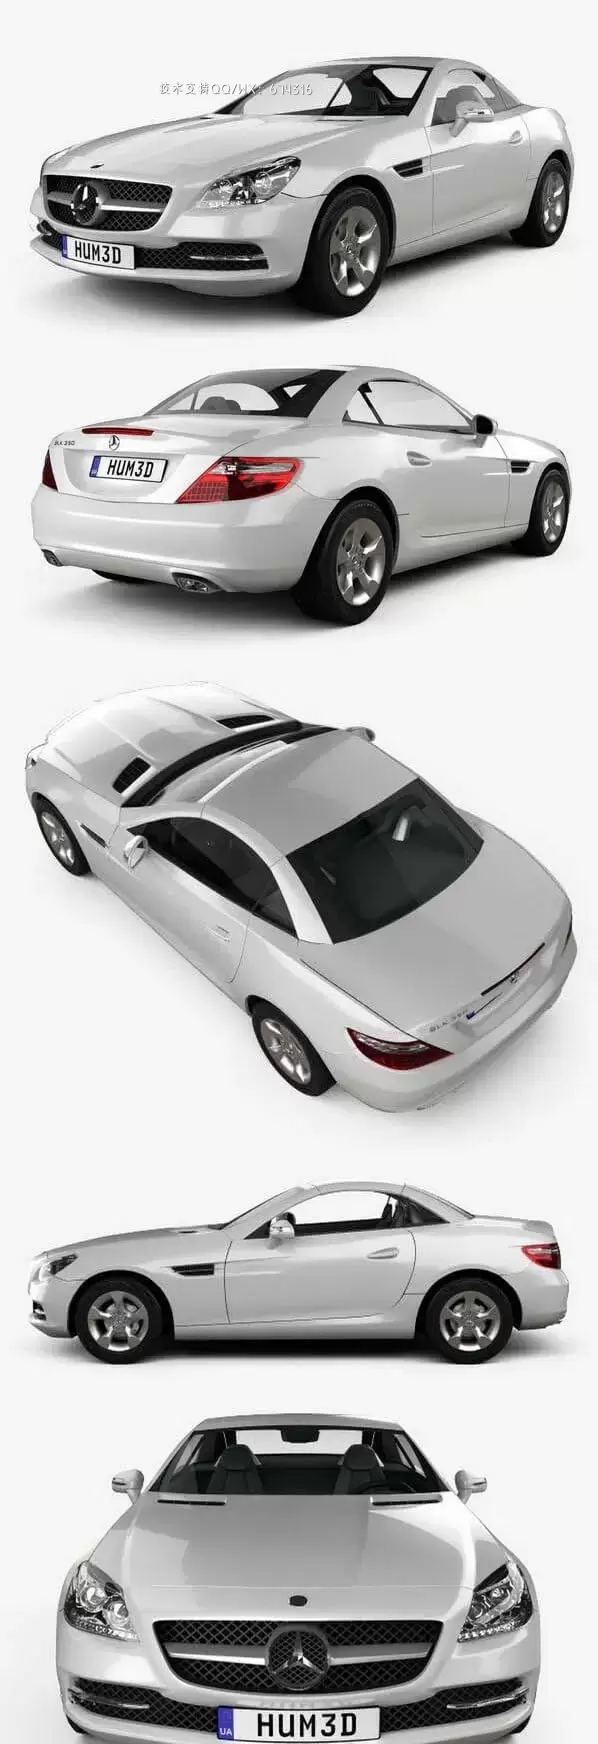 梅赛德斯奔驰 SLK-Class 2012 轿车汽车3D模型下载 (MAX,3DS,FBX,OBJ,C4D,LWO)免费下载